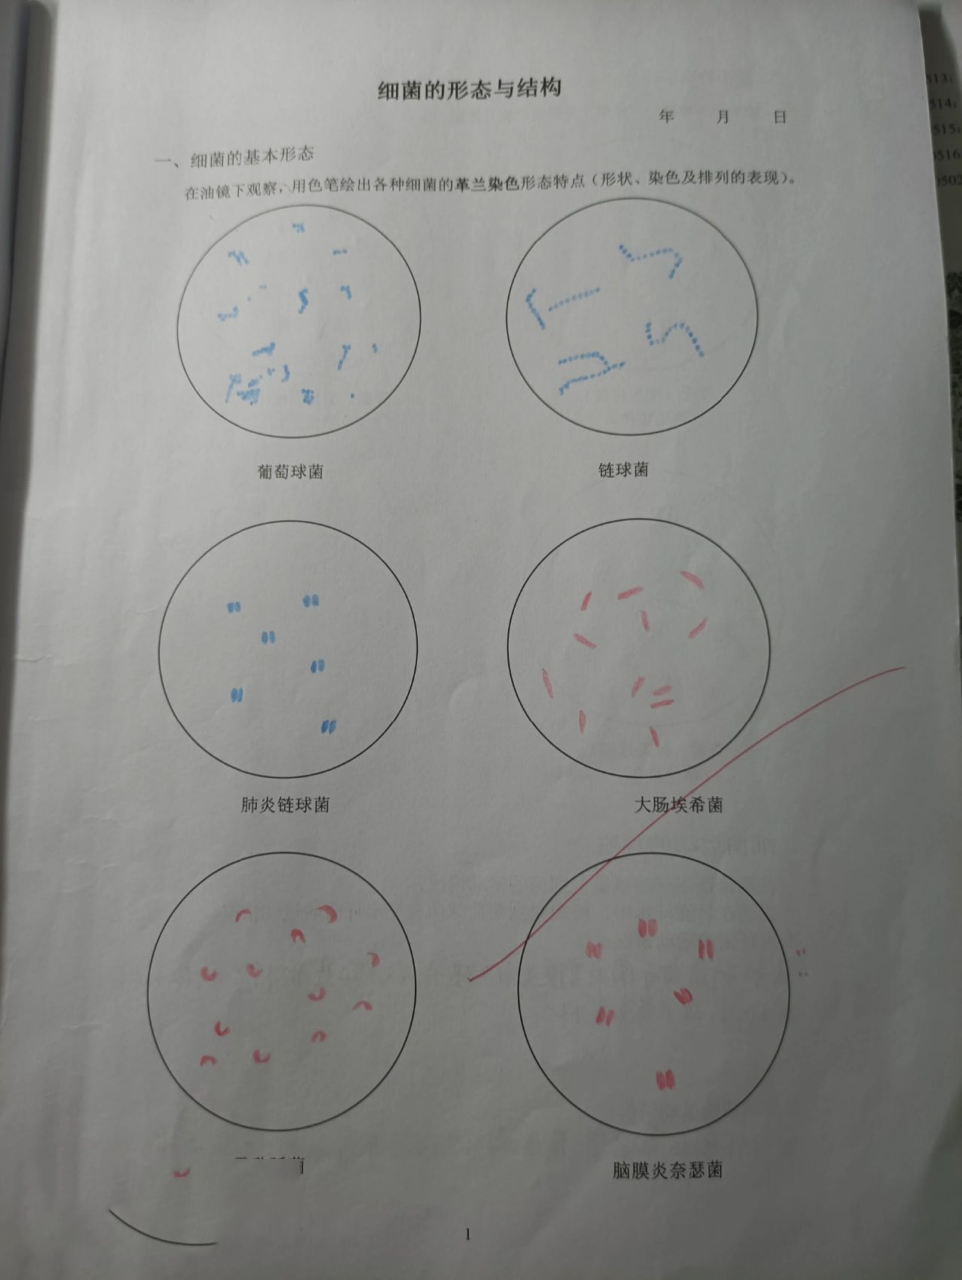 微生物红蓝铅笔手绘图 葡萄球菌 链球菌 肺炎双球菌 大肠埃希菌 霍乱